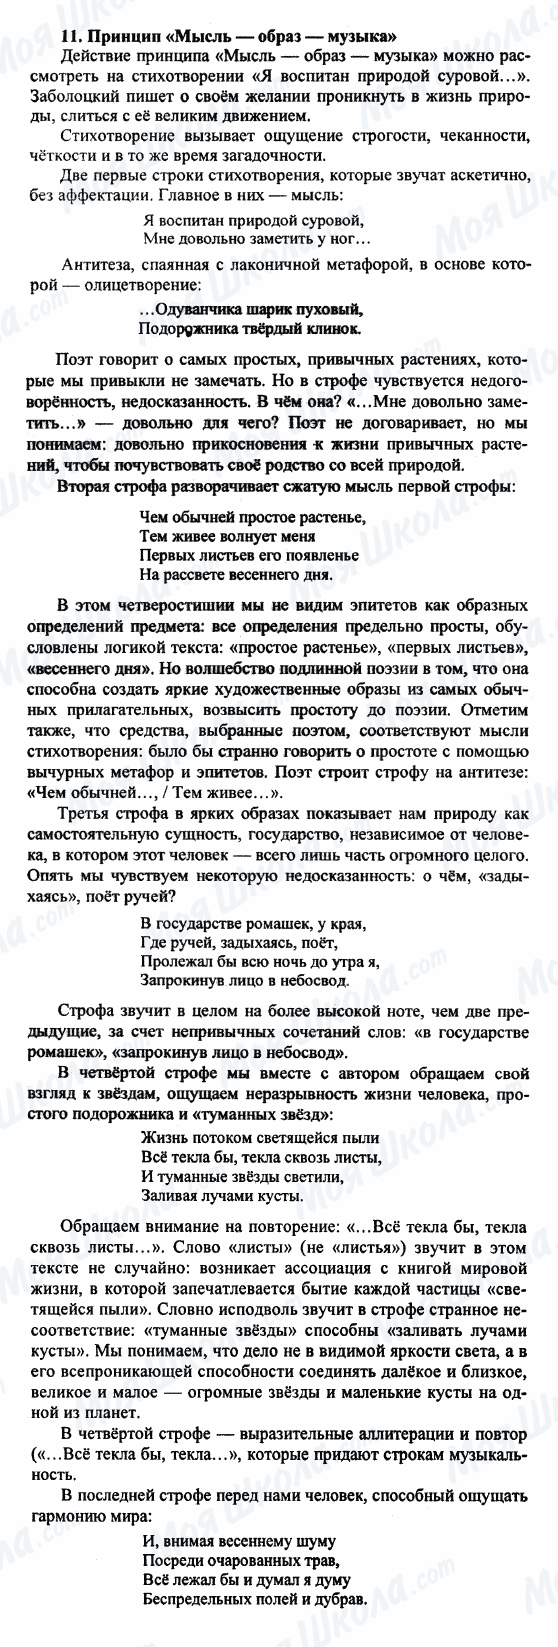 ГДЗ Русская литература 9 класс страница 11